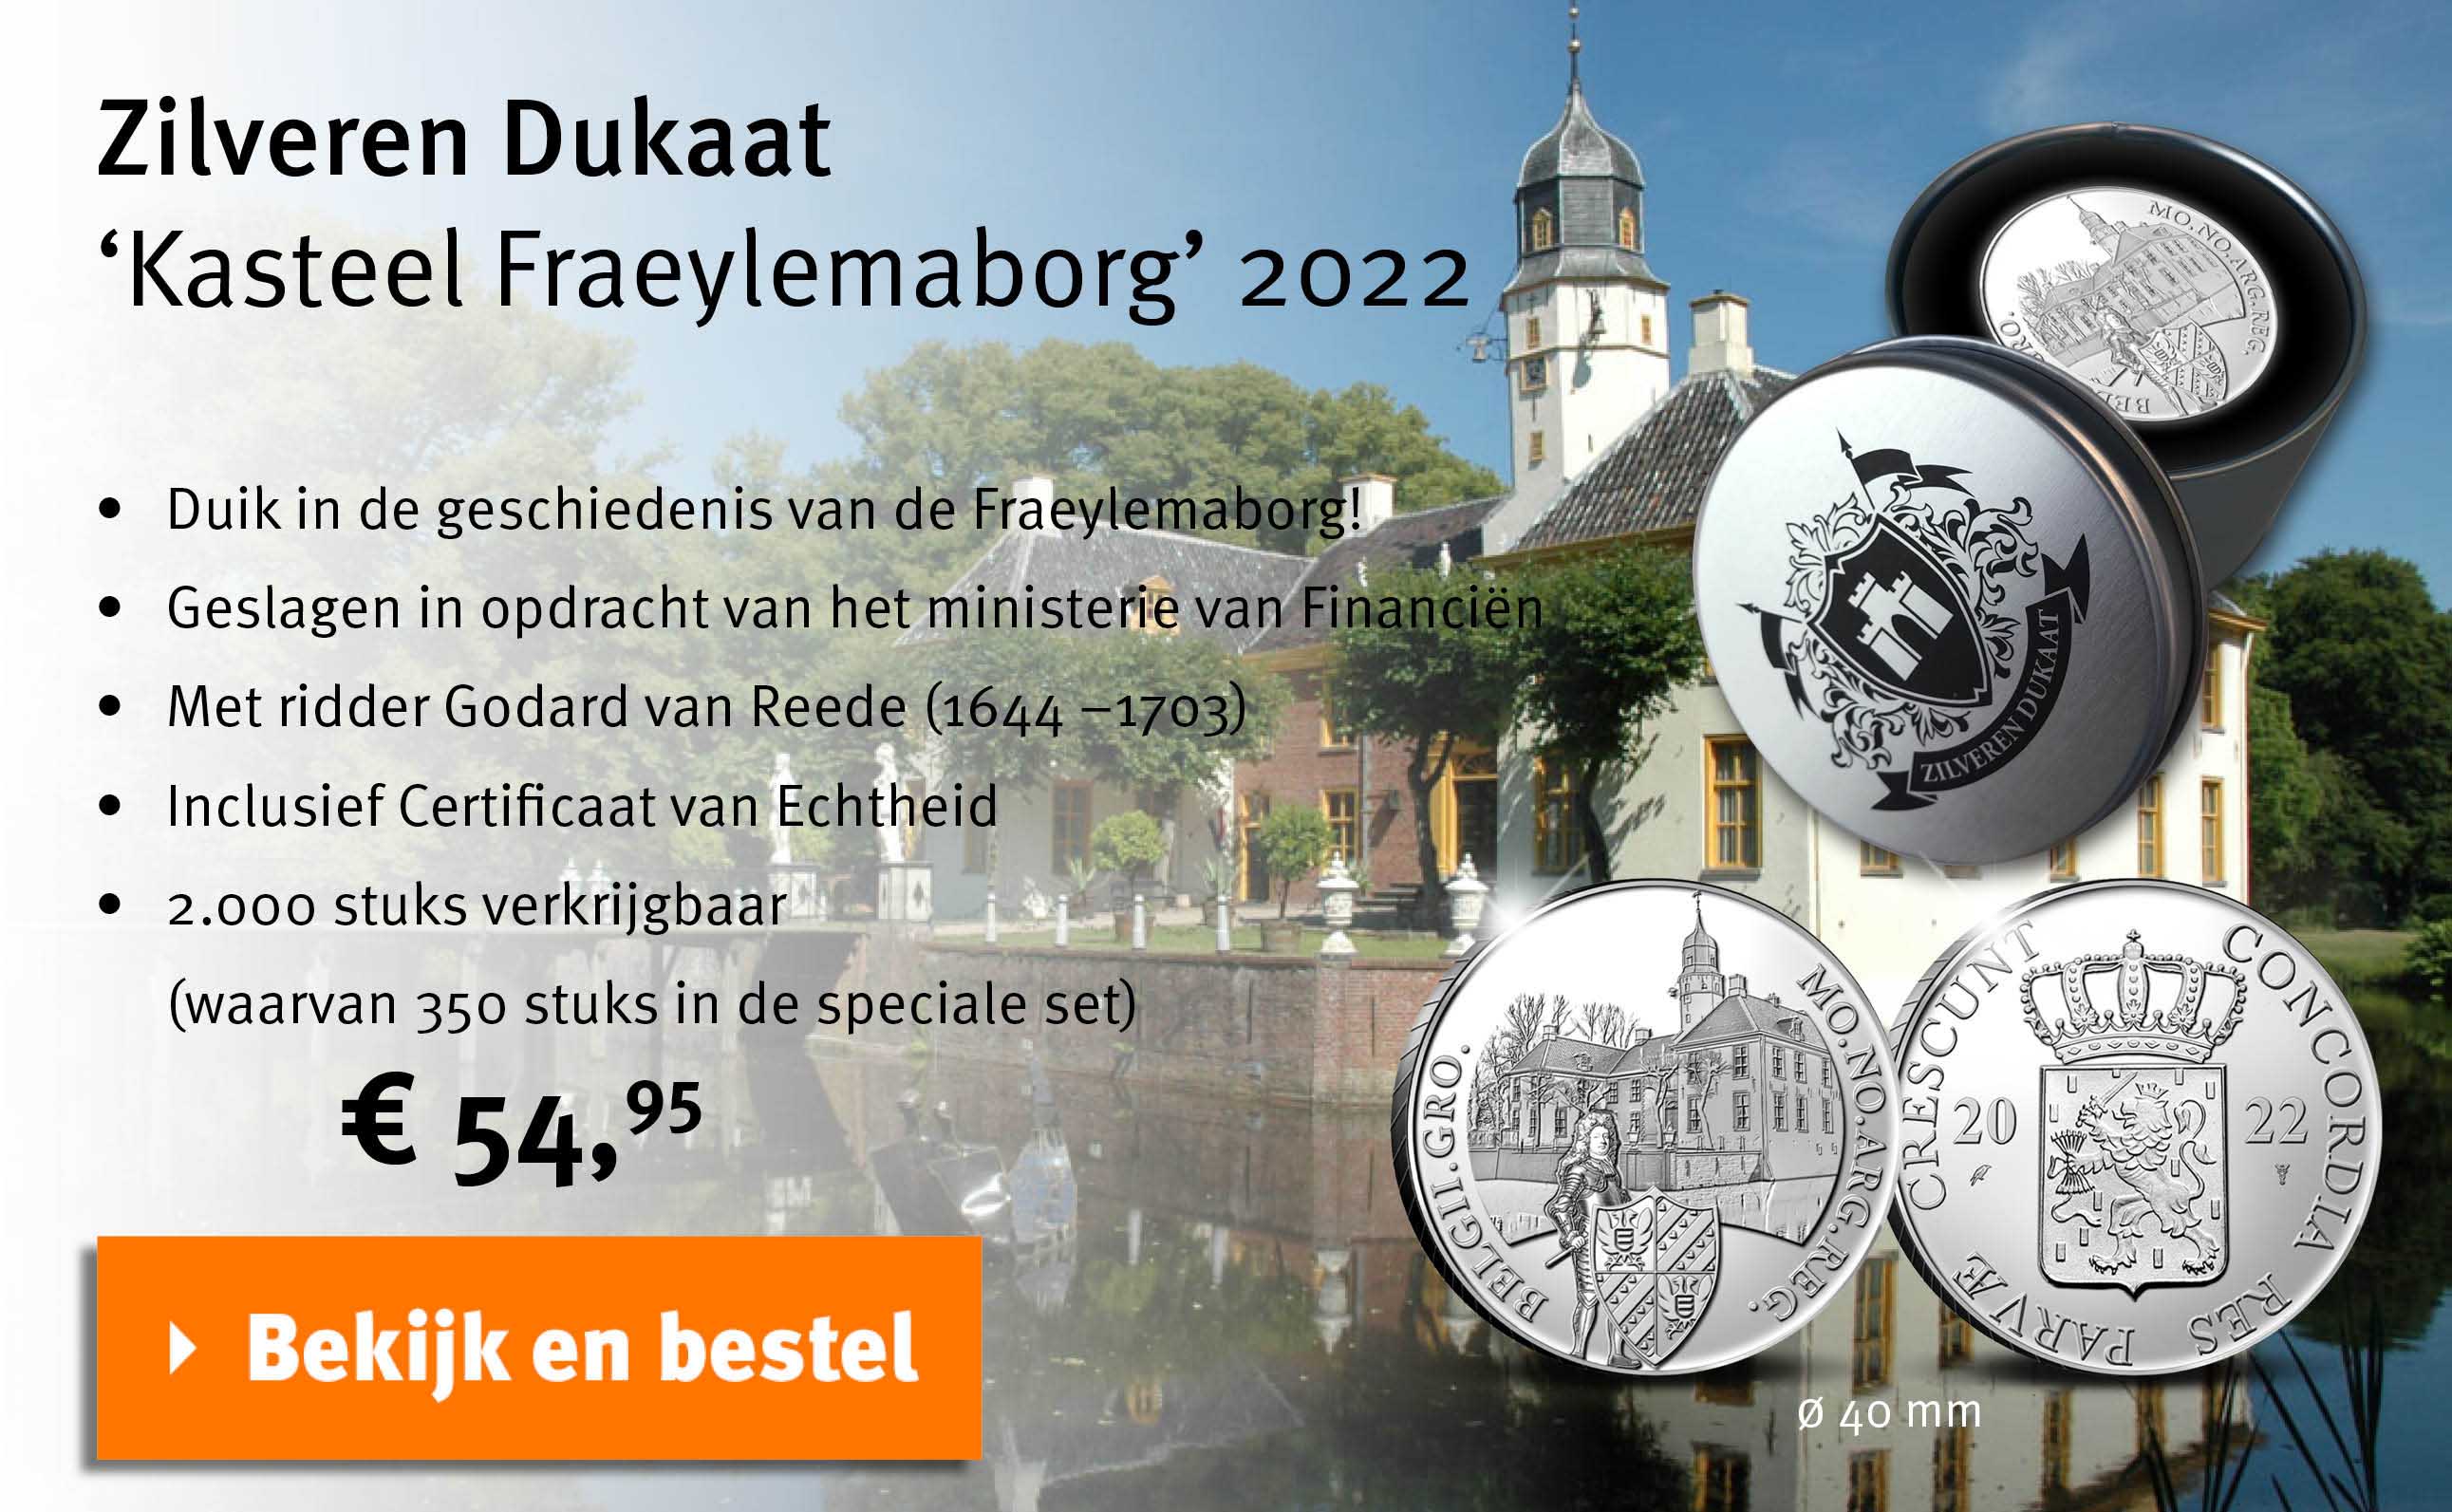 Bekijk en bestel: Zilveren Dukaat - Kasteel Fraeylemaborg